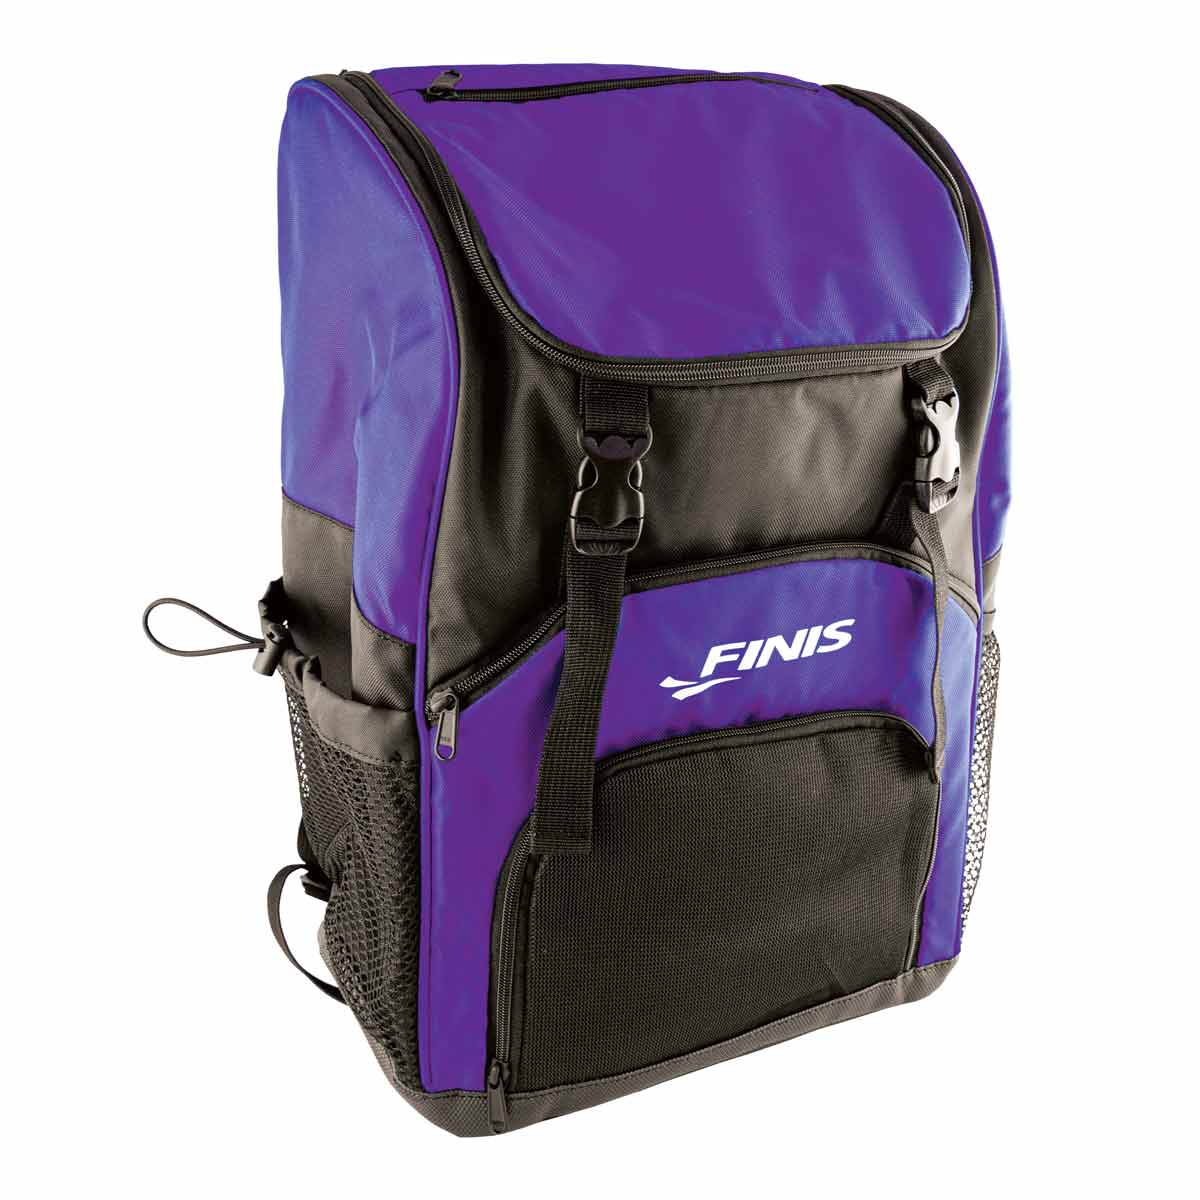 FINIS Team Backpack - Ultraviolet